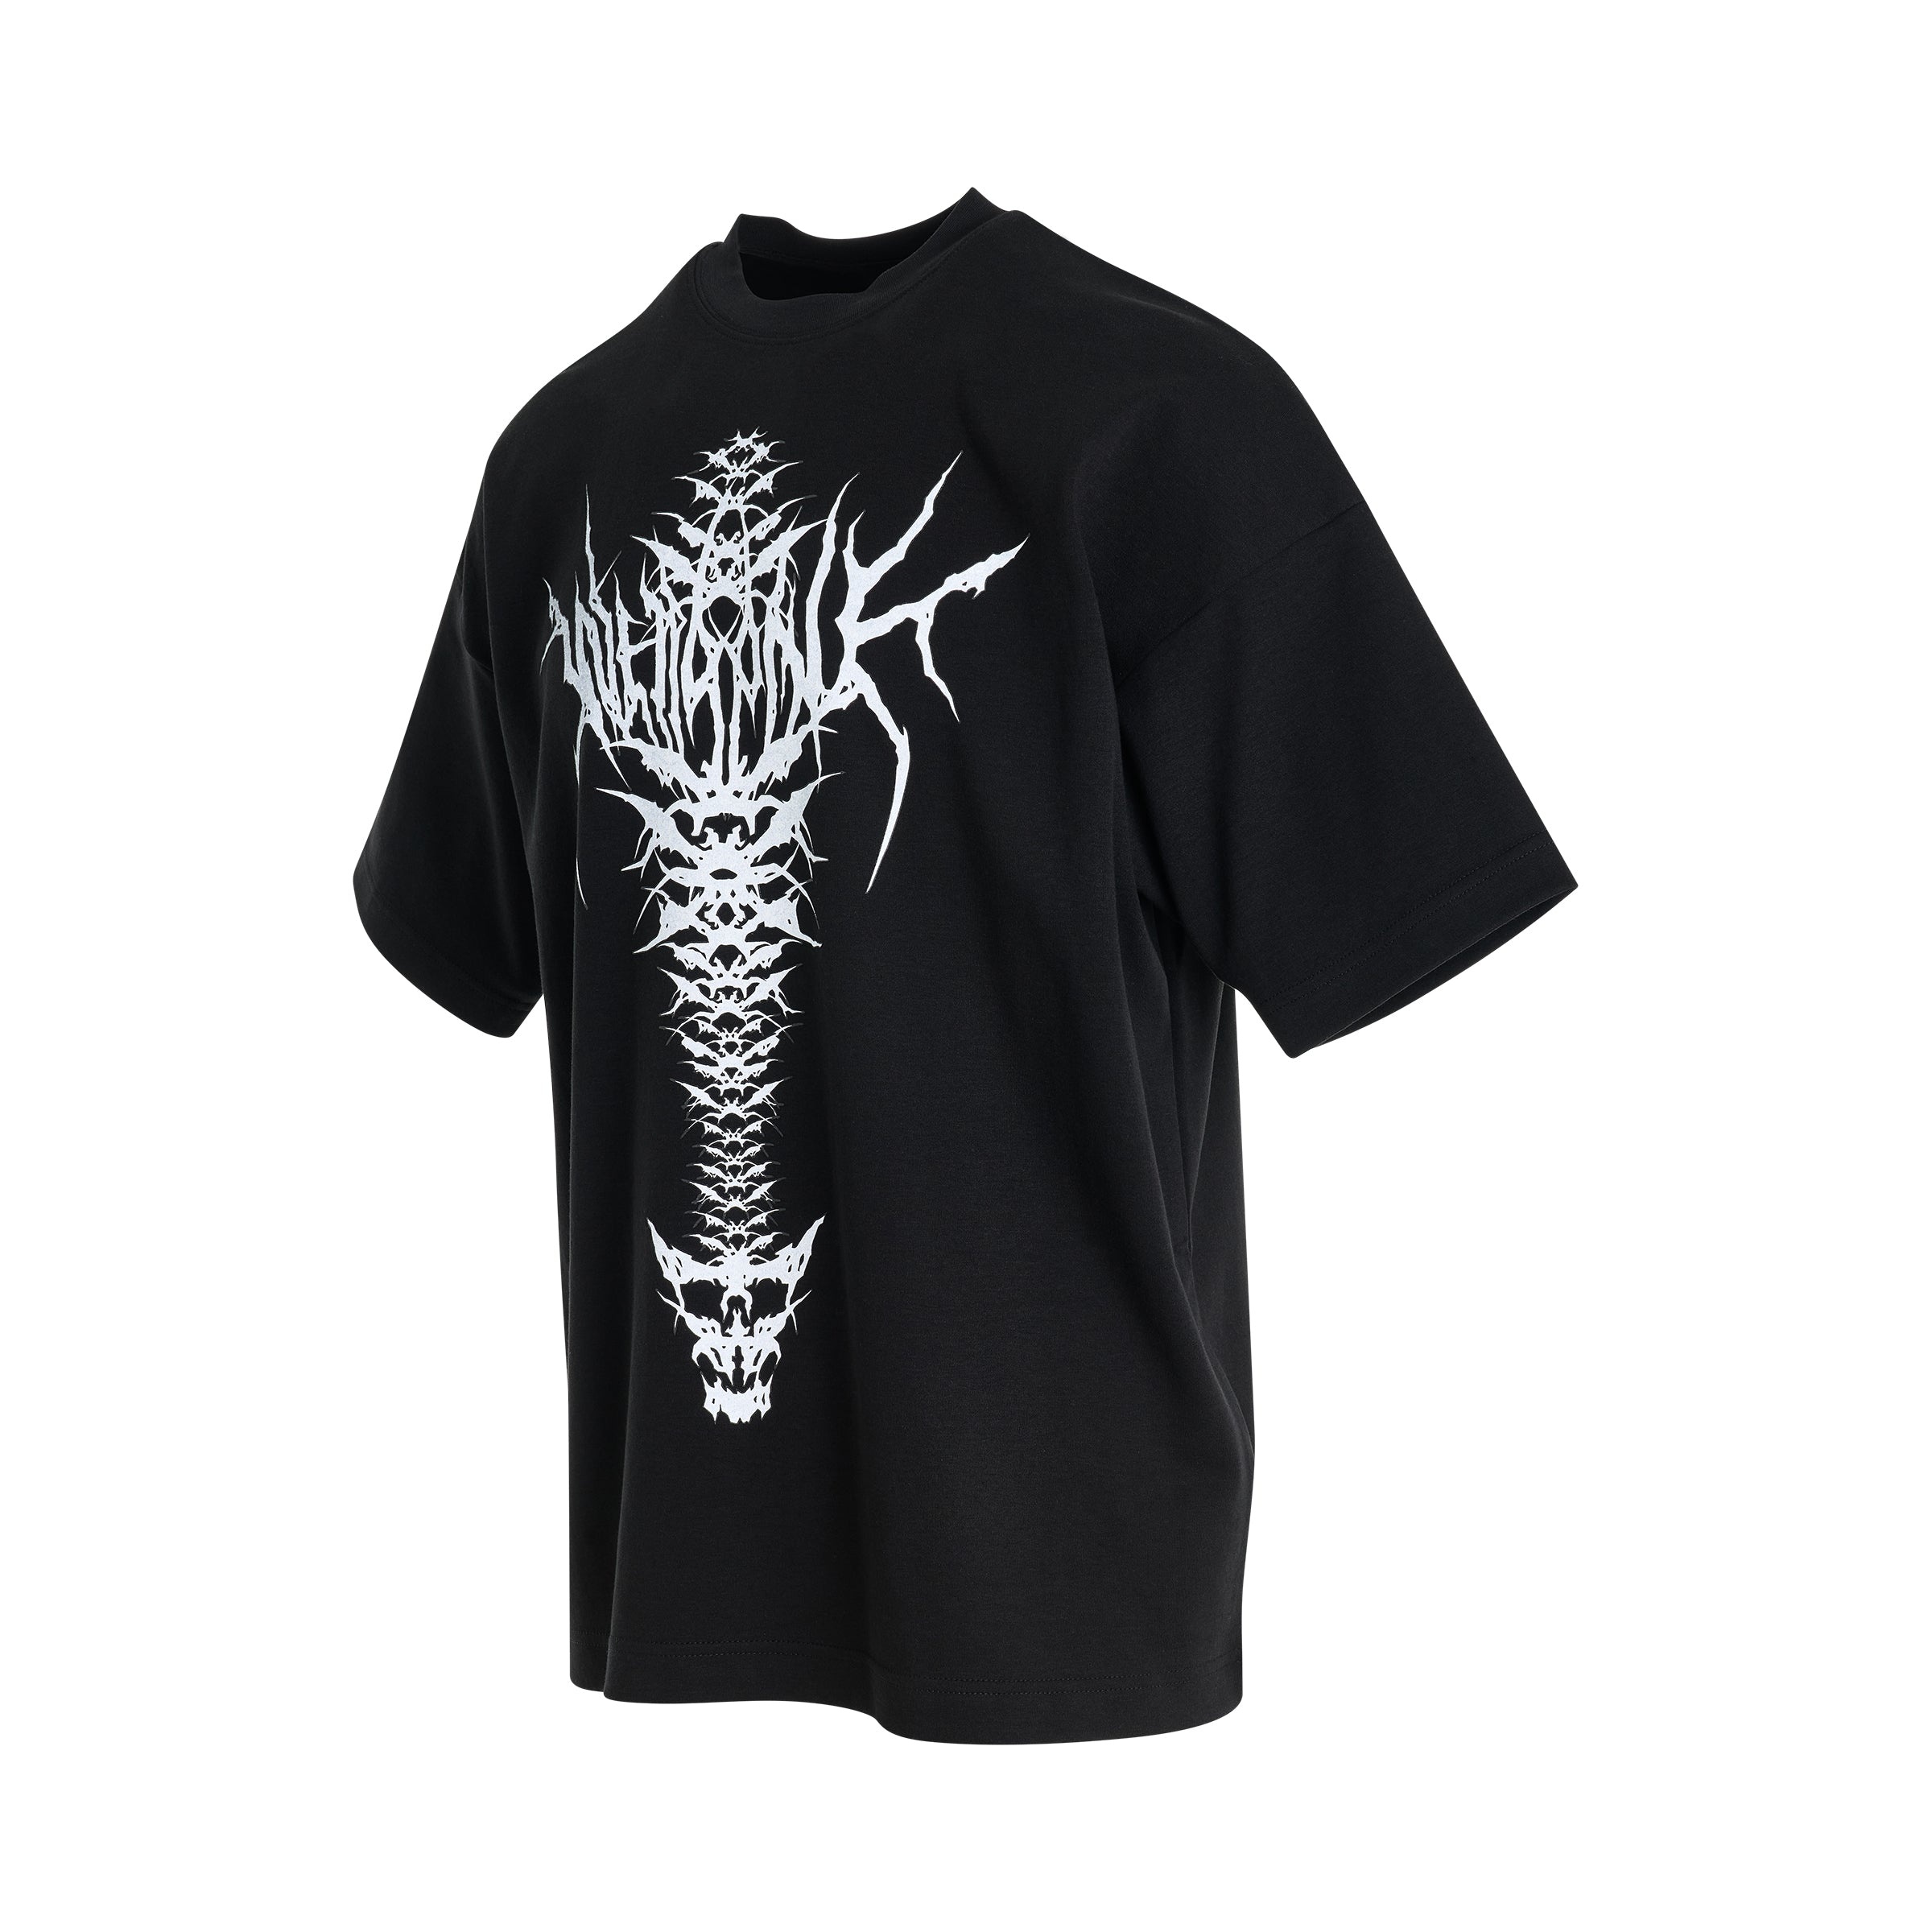 Spine Skull Print T-Shirt in Black - 2